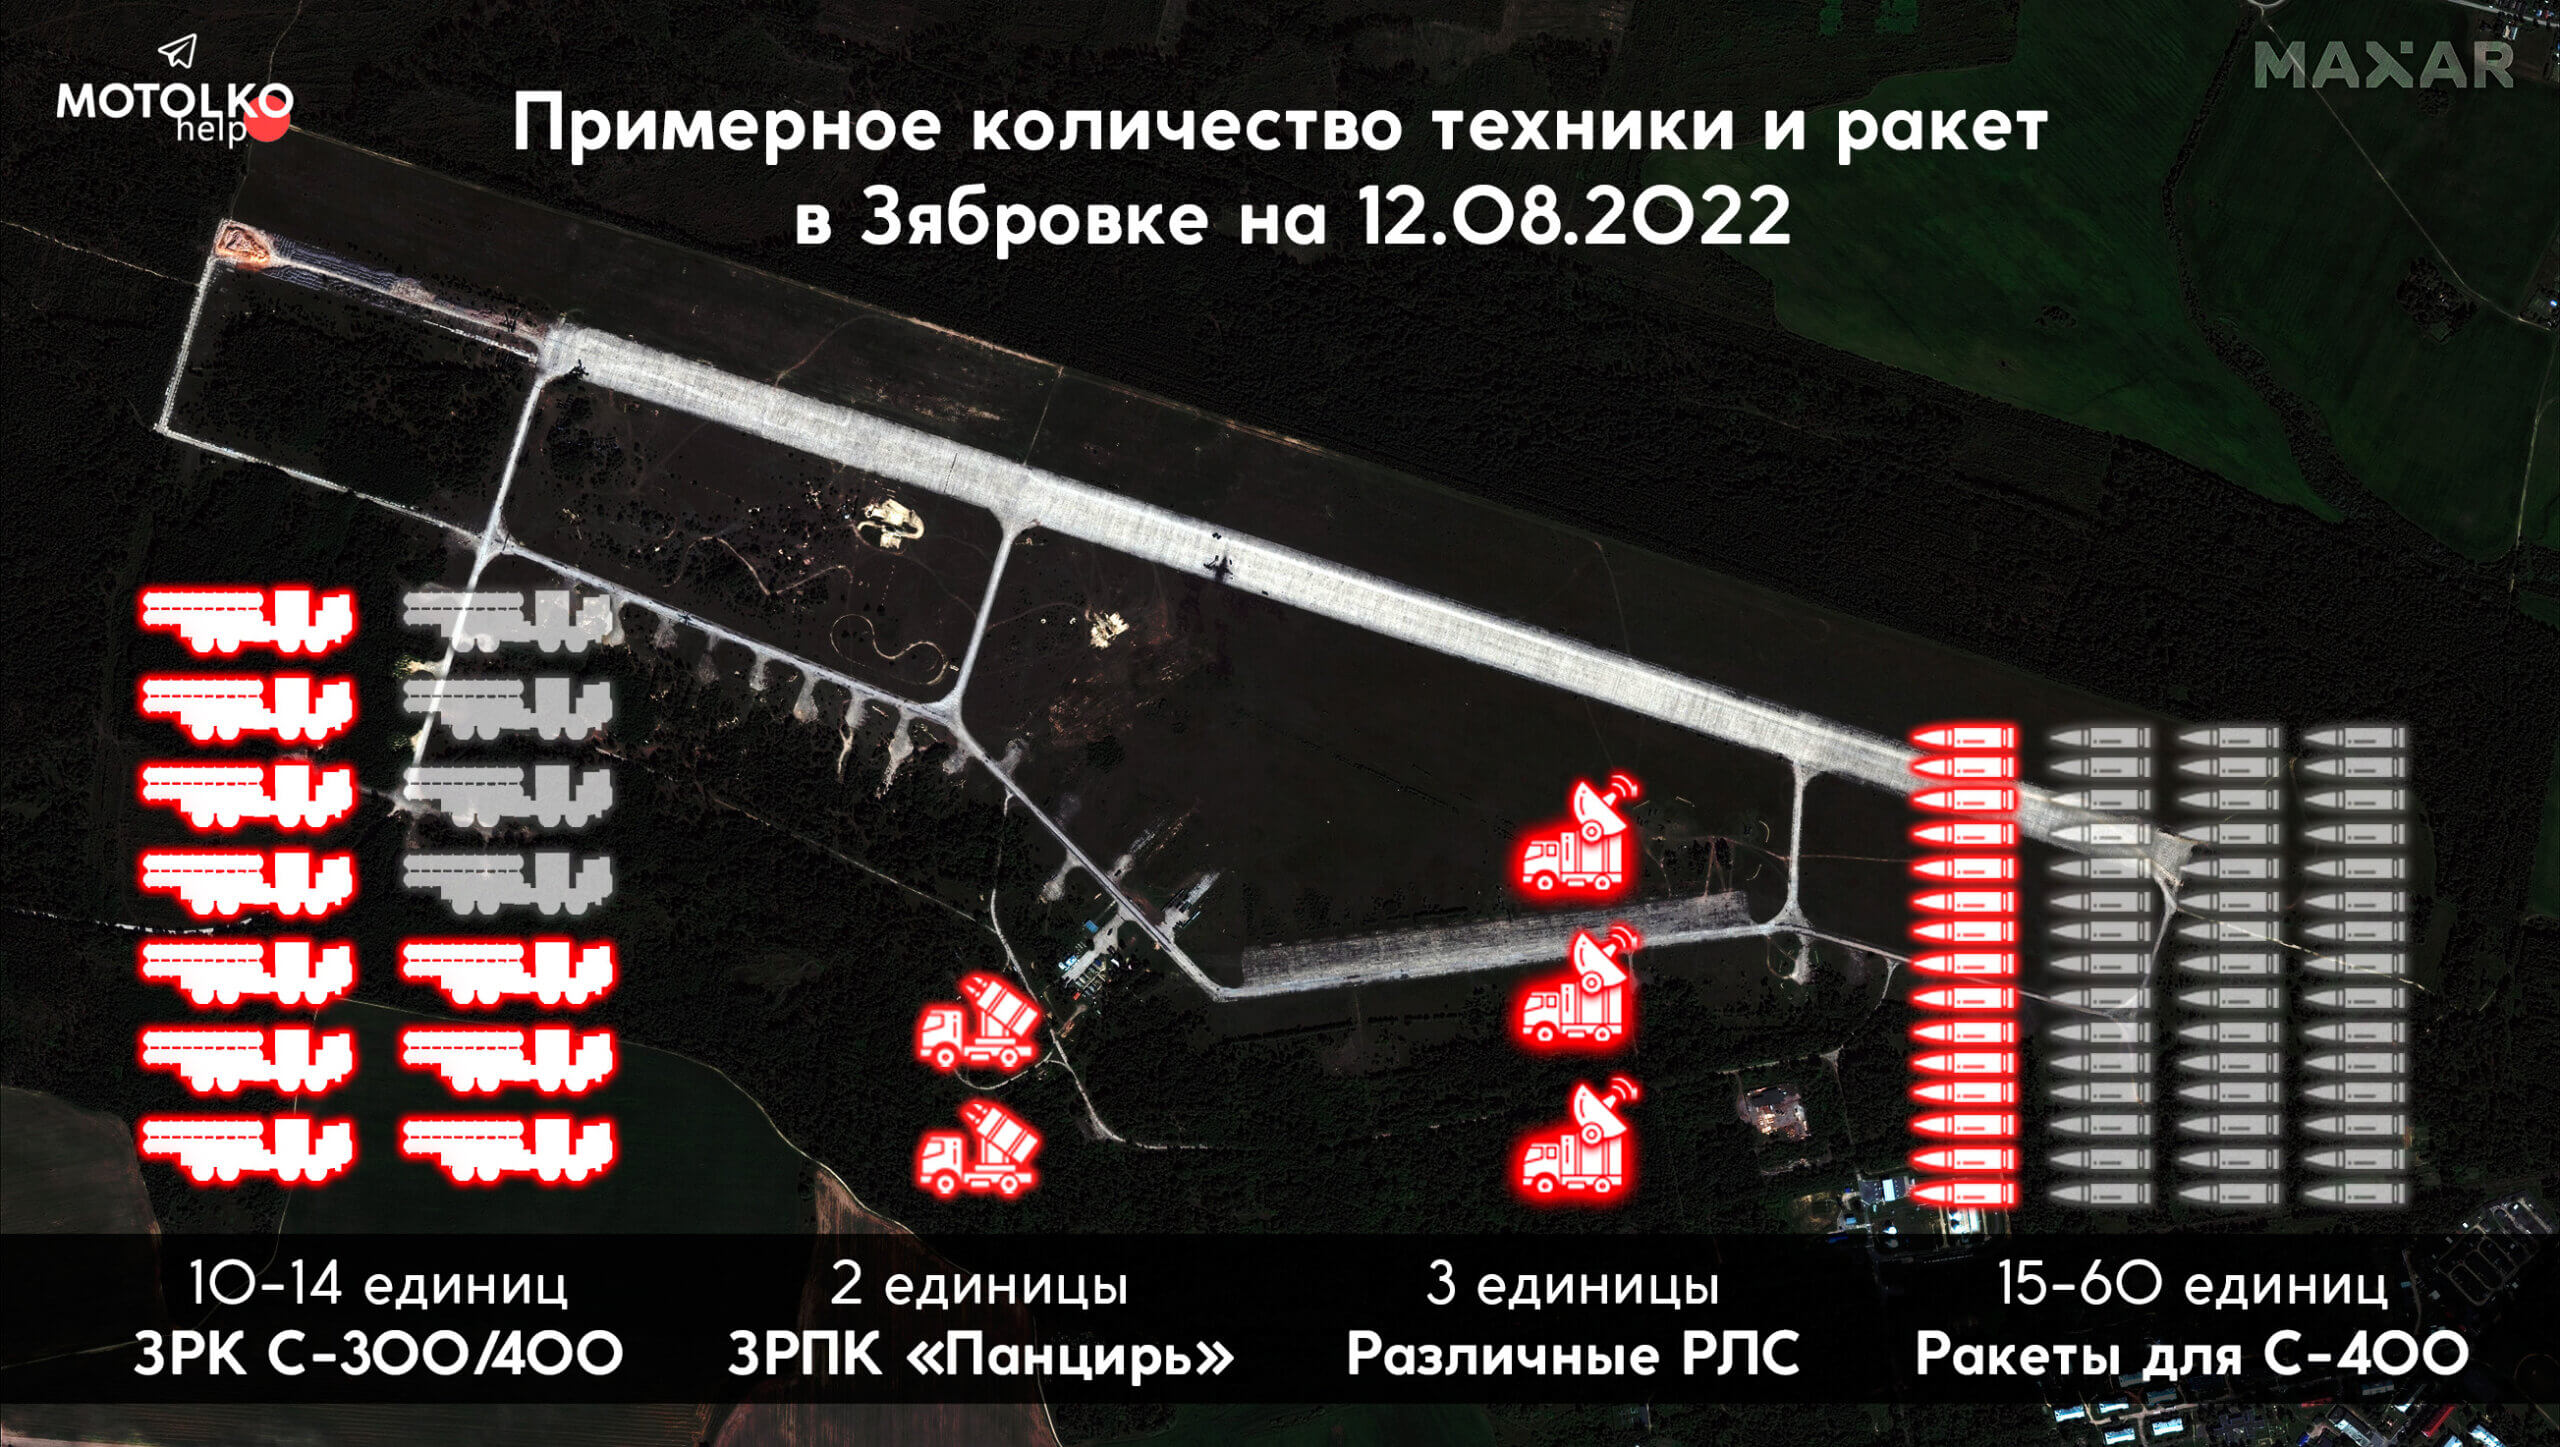 Akár 14 S-300/400 légvédelmi rendszer, Pantsir légvédelmi rakétarendszer és radarállomás: az RF fegyveres erők továbbra is Zjabrovkában tartózkodnak